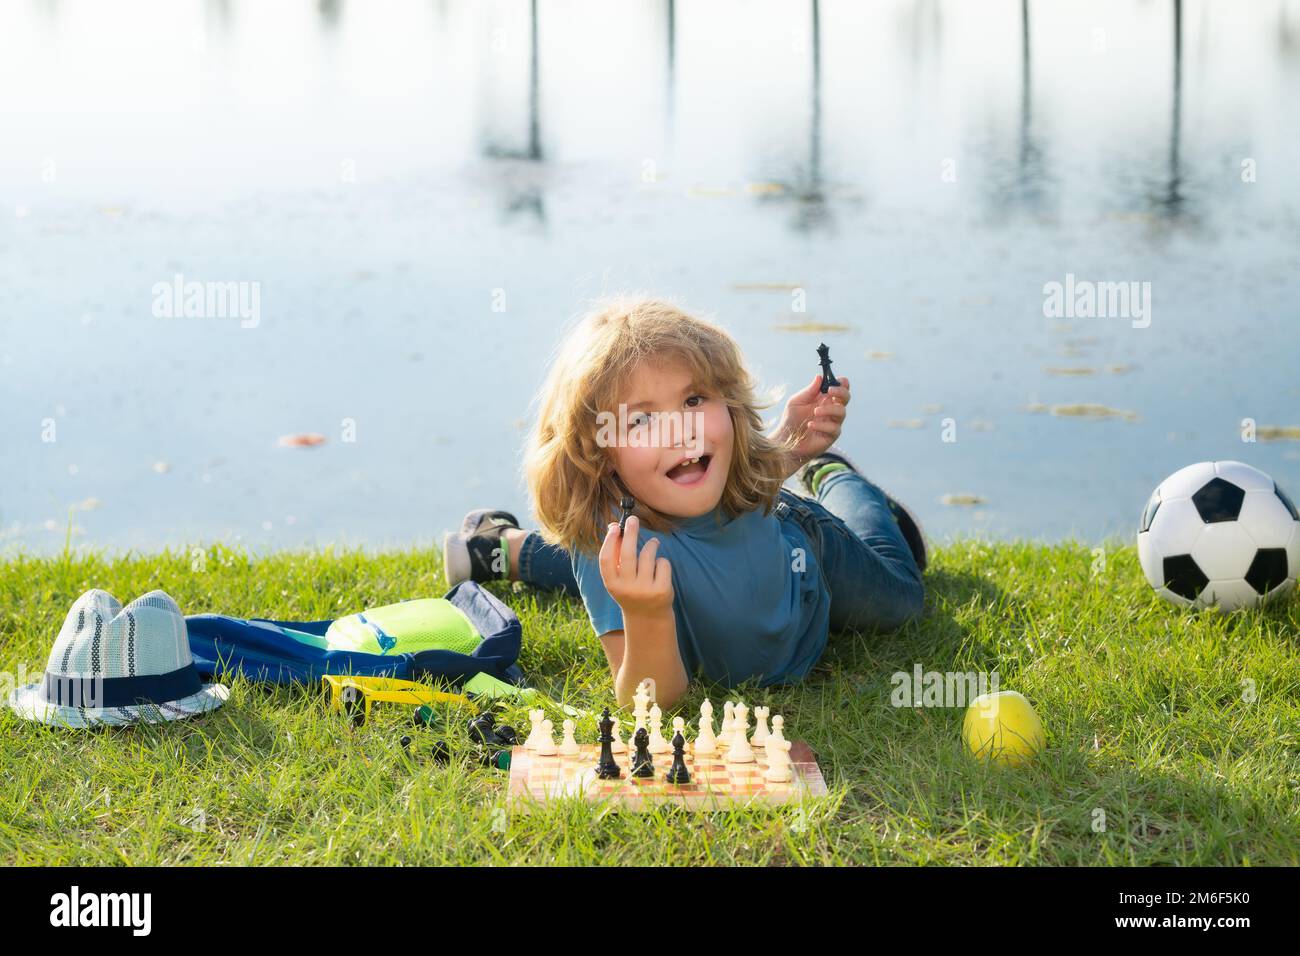 Der Junge zeigt Schachfiguren auf einem Schachbrett. Kleines Kind spielt Schach. Kind spielt Brettspiel. Denk-Kind-Brainstorming und Idee im Schachspiel. Schach Stockfoto